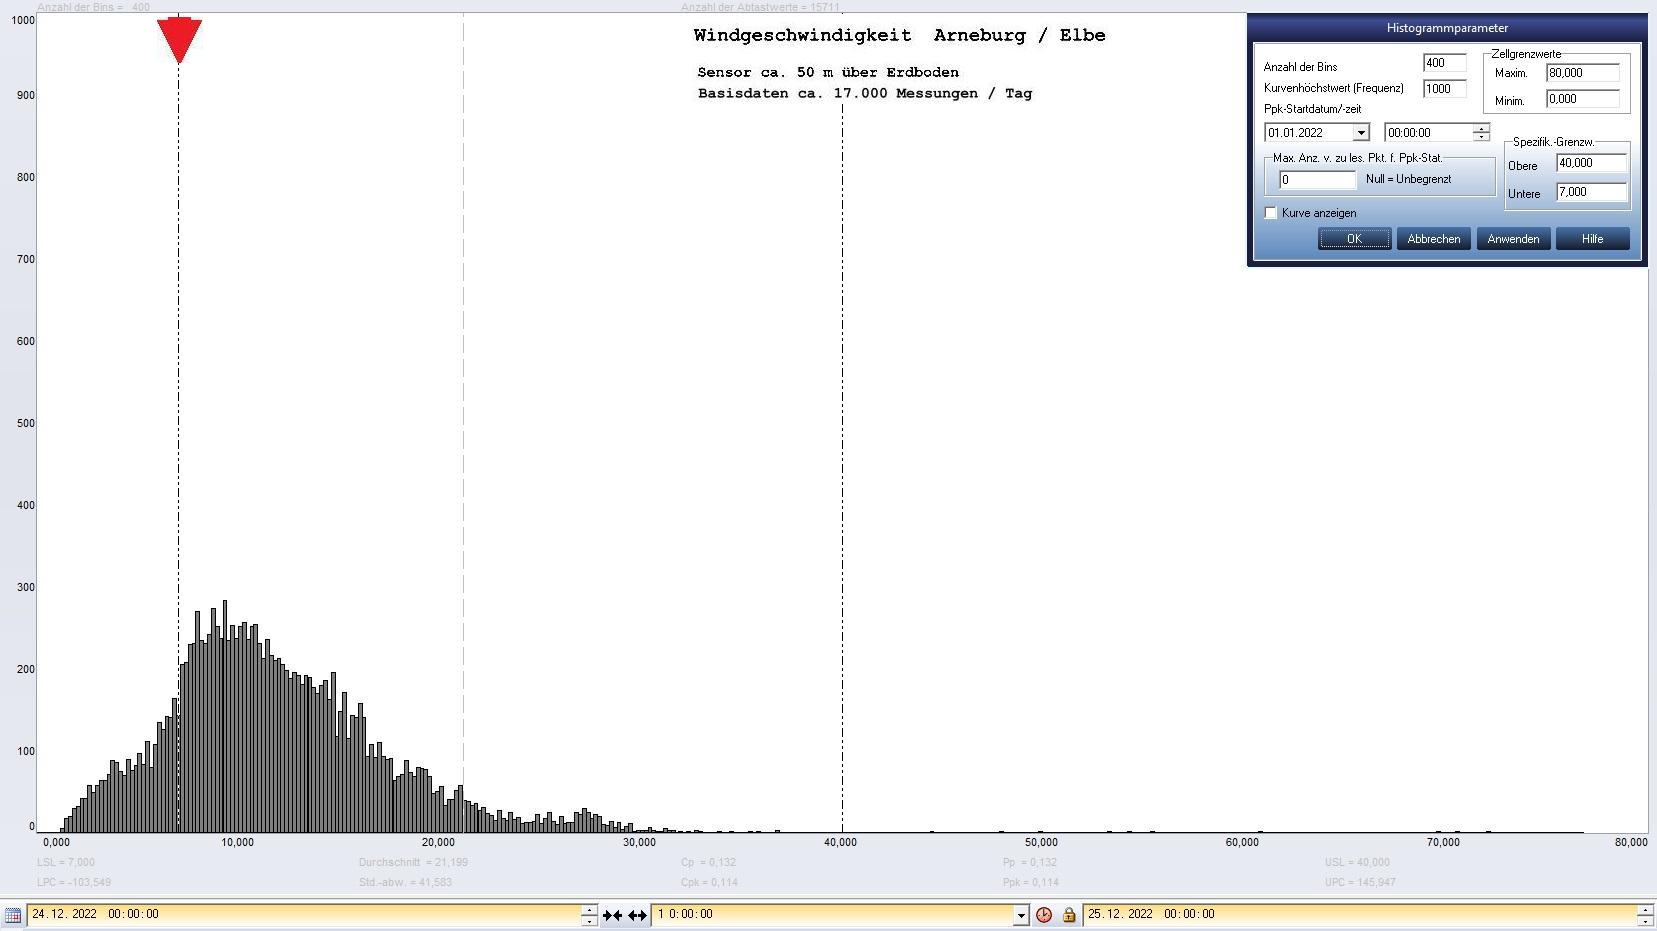 Arneburg Tages-Histogramm Winddaten, 24.12.2022
  Histogramm, Sensor auf Gebude, ca. 50 m ber Erdboden, Basis: 5s-Aufzeichnung